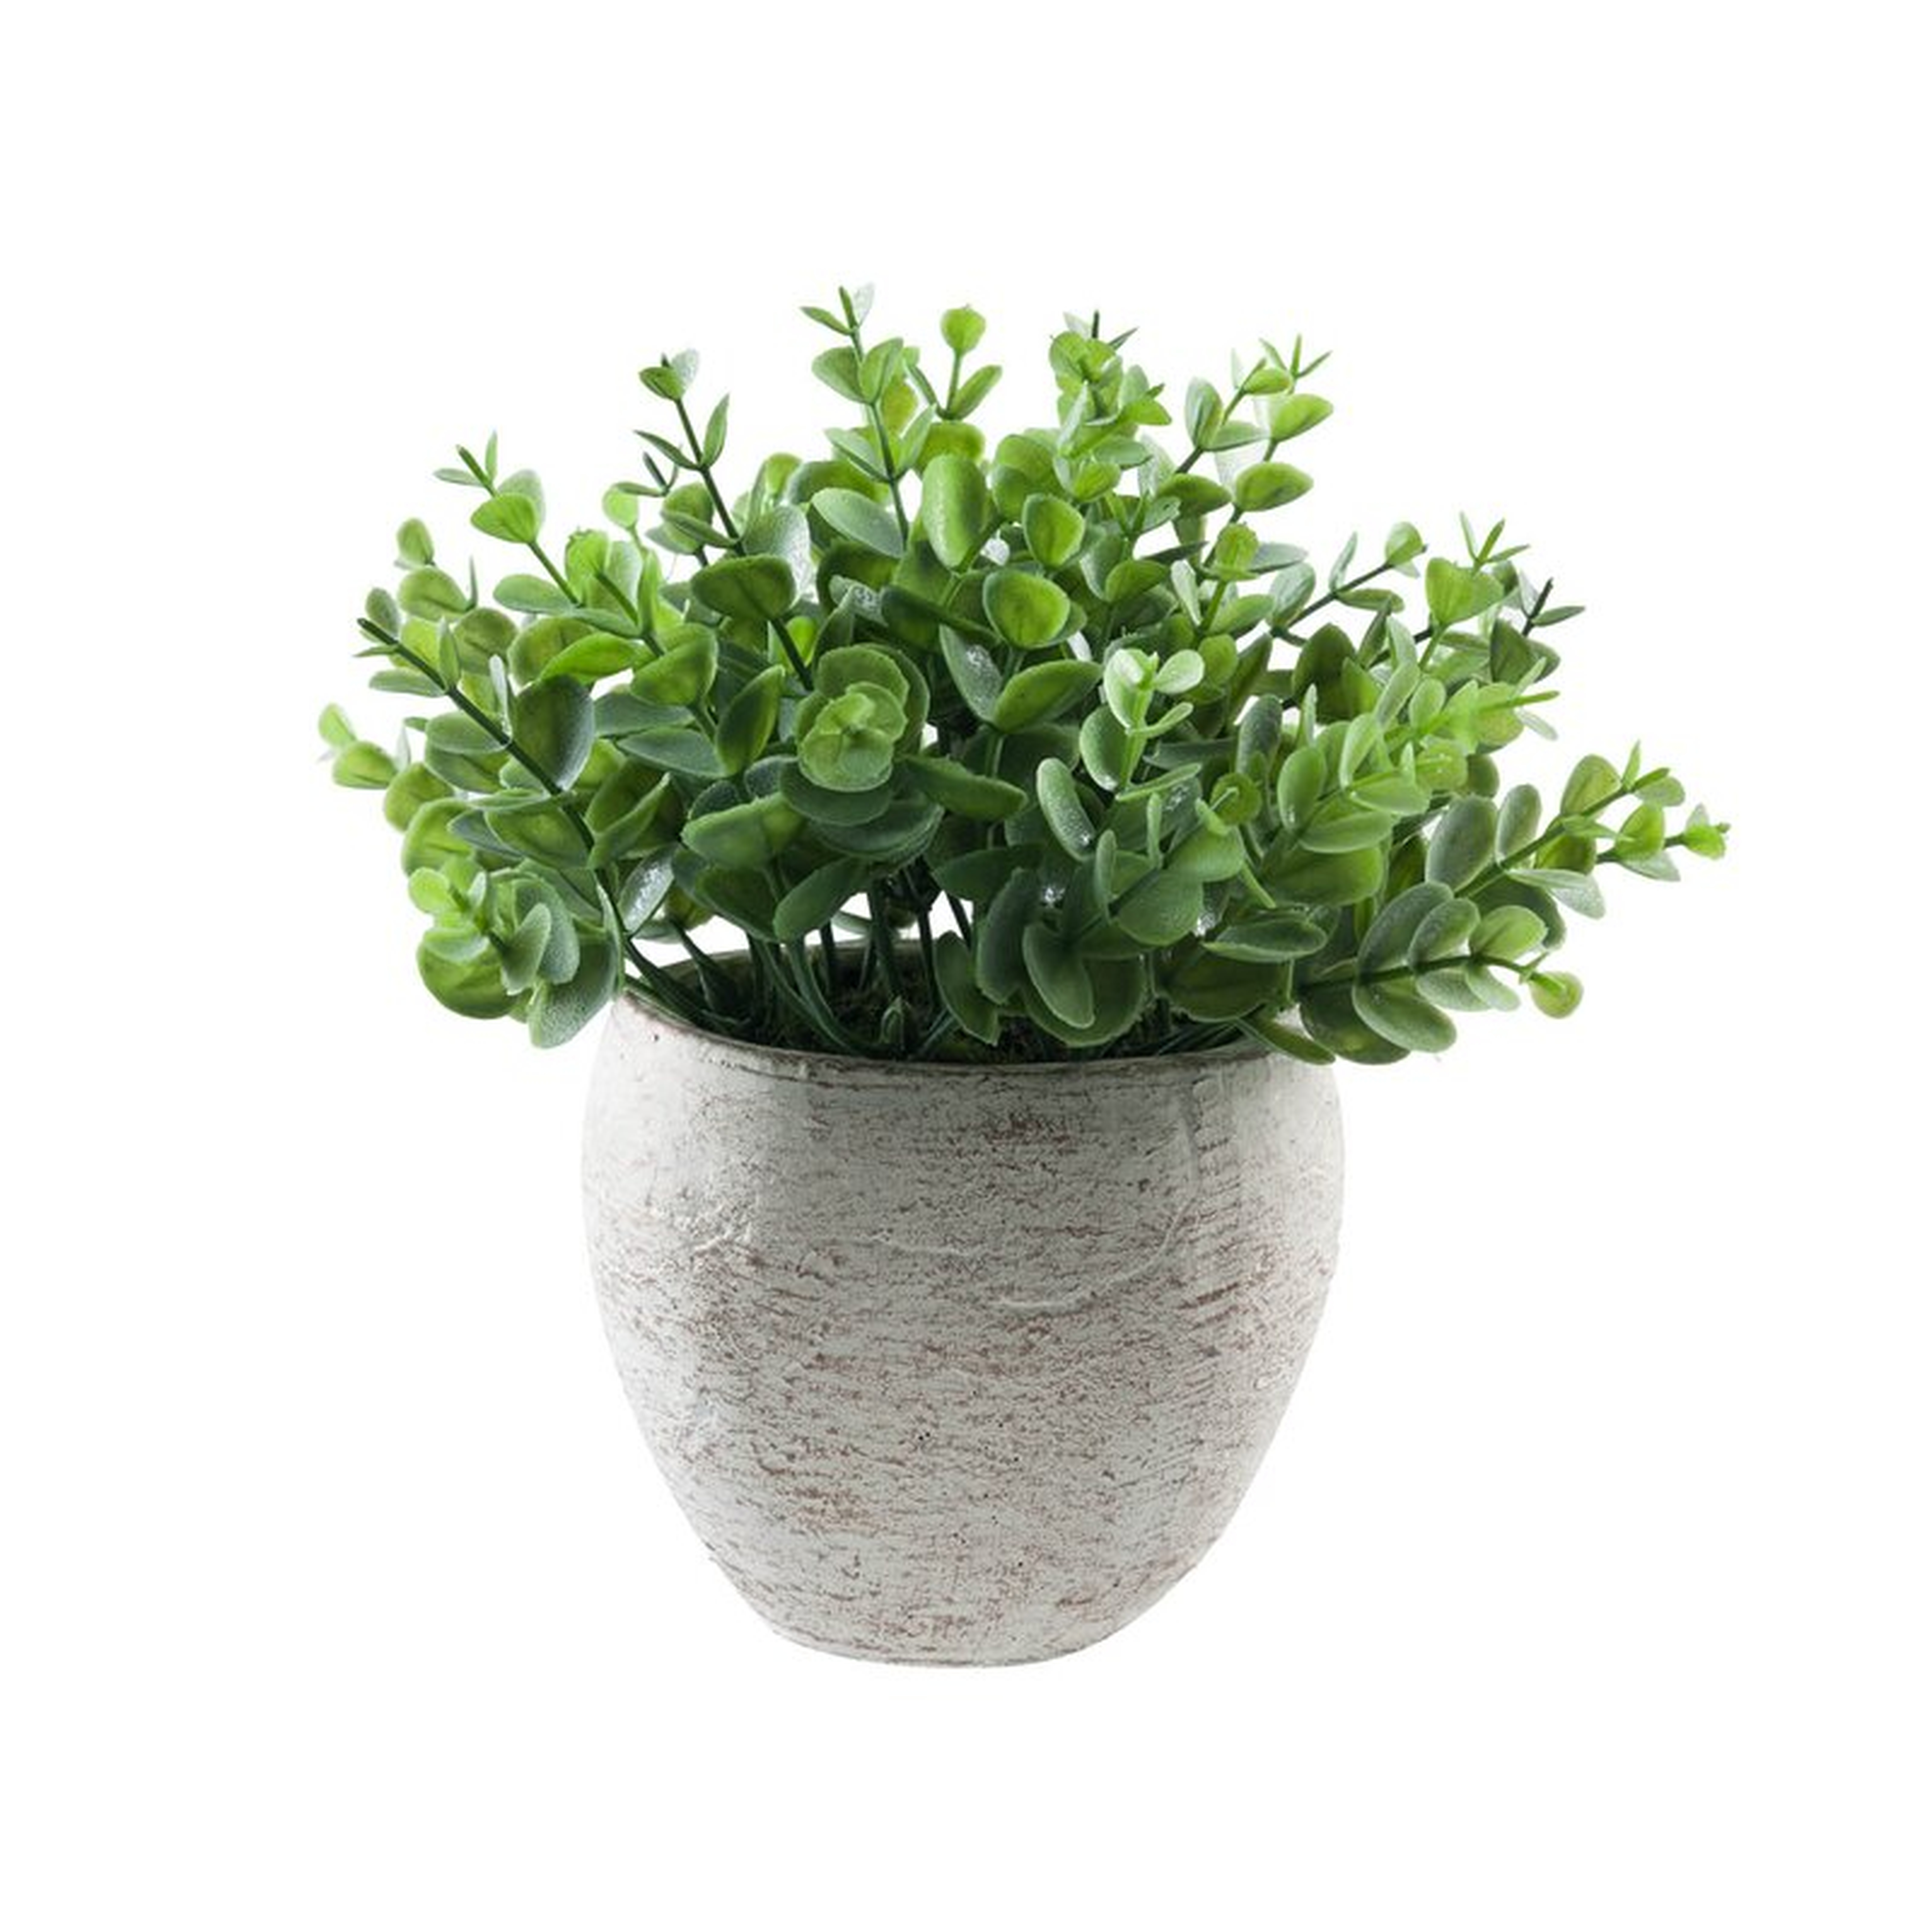 Faux Succulent Plant in Pot - Wayfair